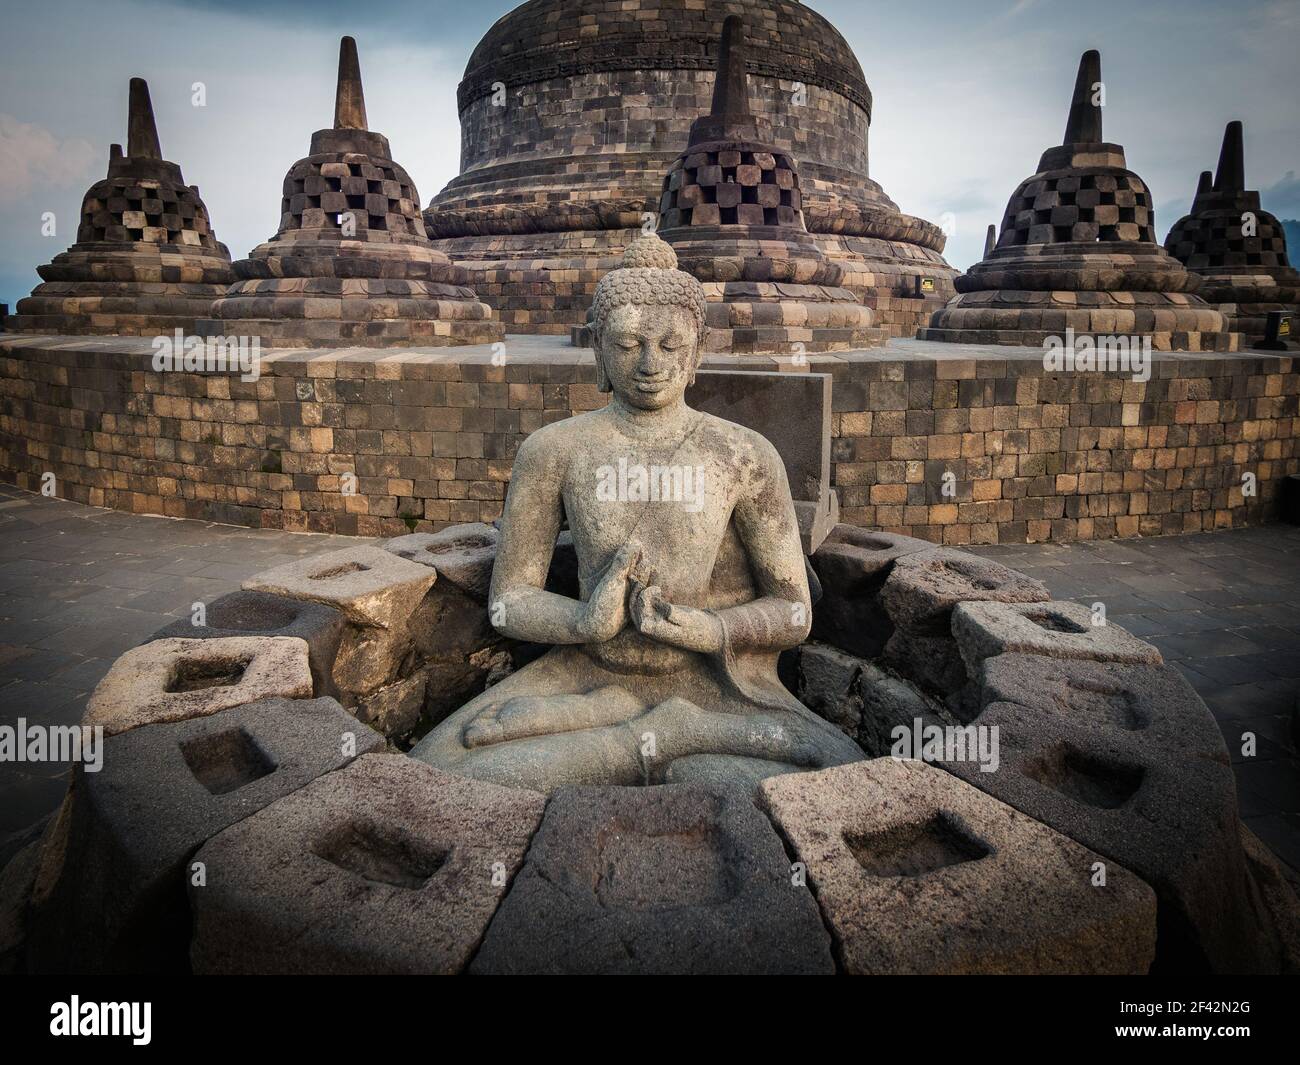 Ruines antiques de Borobudur, un temple bouddhiste Mahayana du IXe siècle dans la Régence de Magelang près de Yogyakarta dans le centre de Java, en Indonésie. Banque D'Images